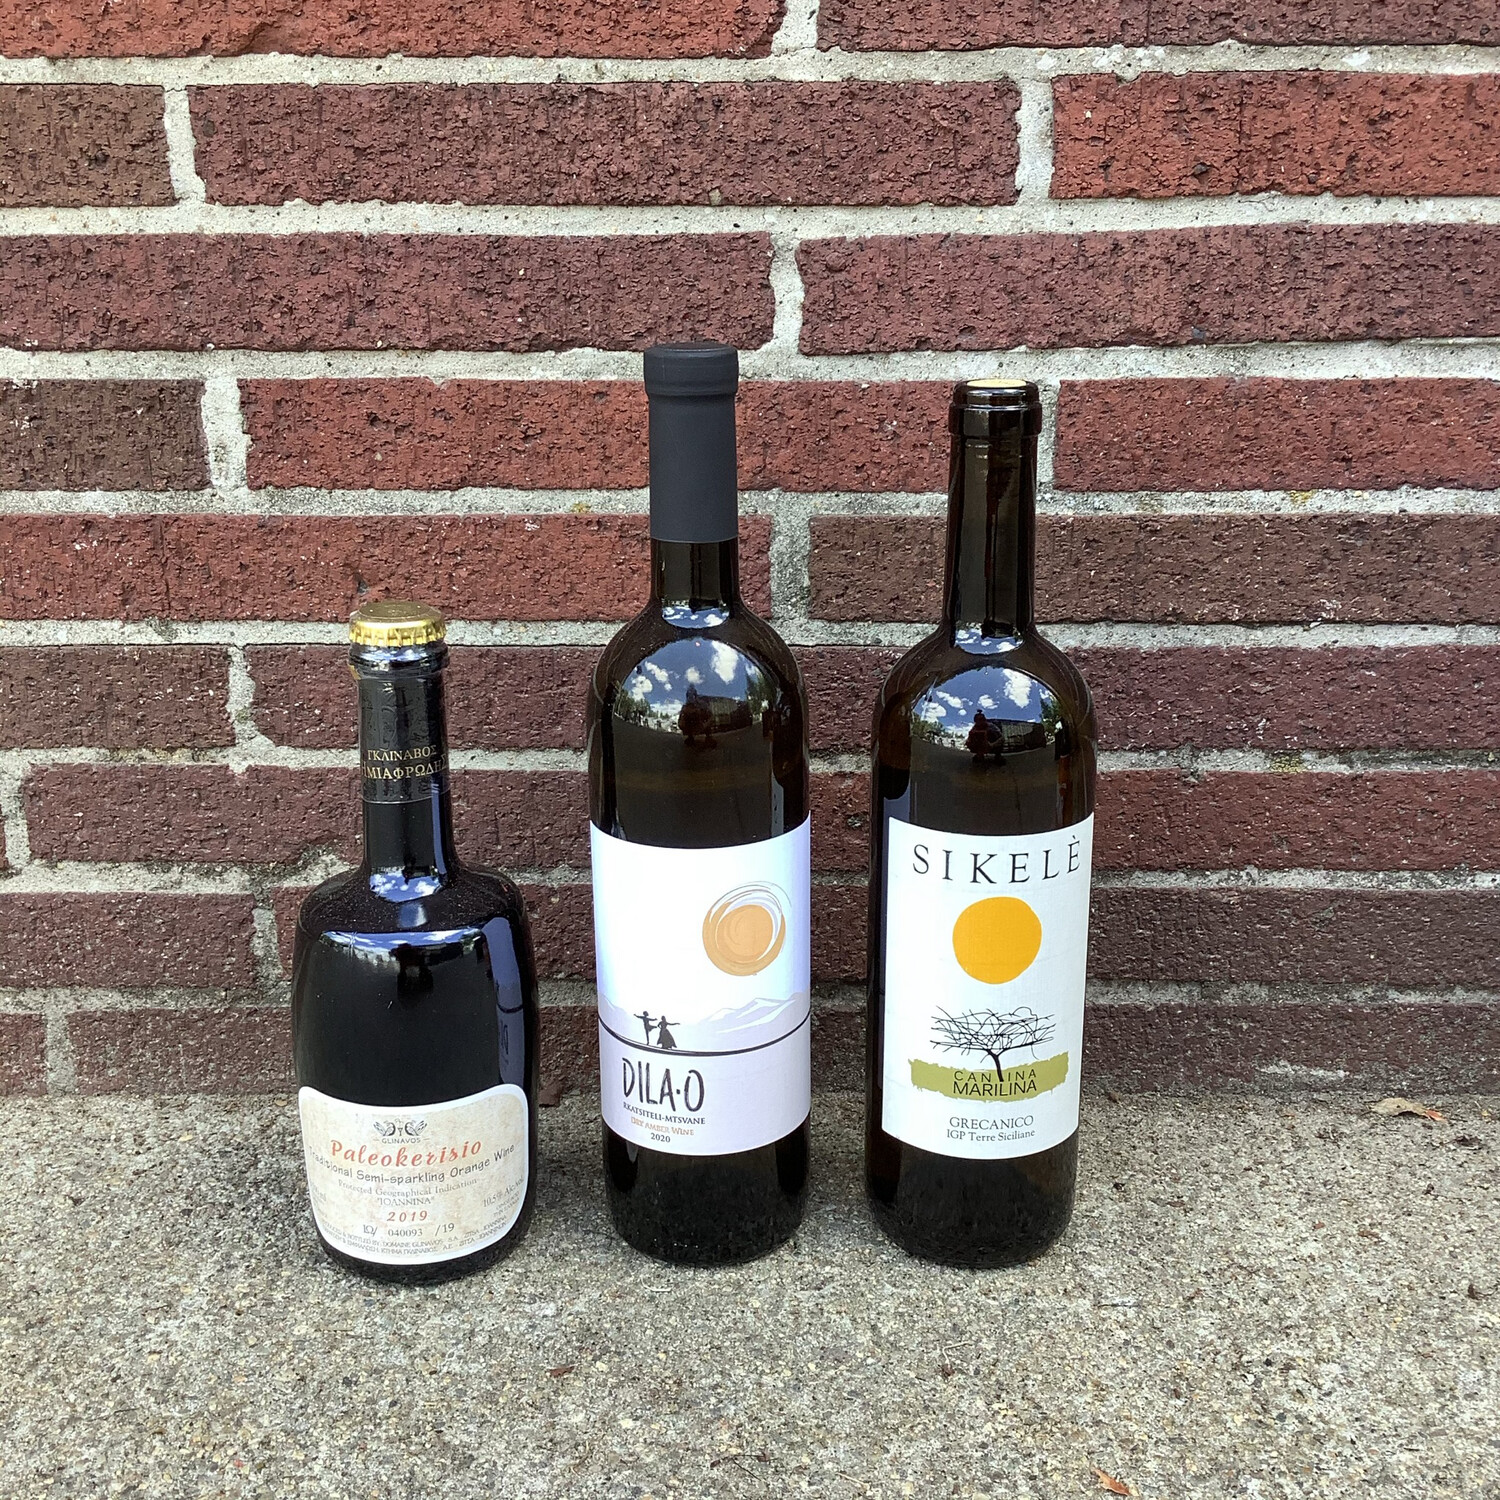 Orange Wine $15-20, Staff Pick